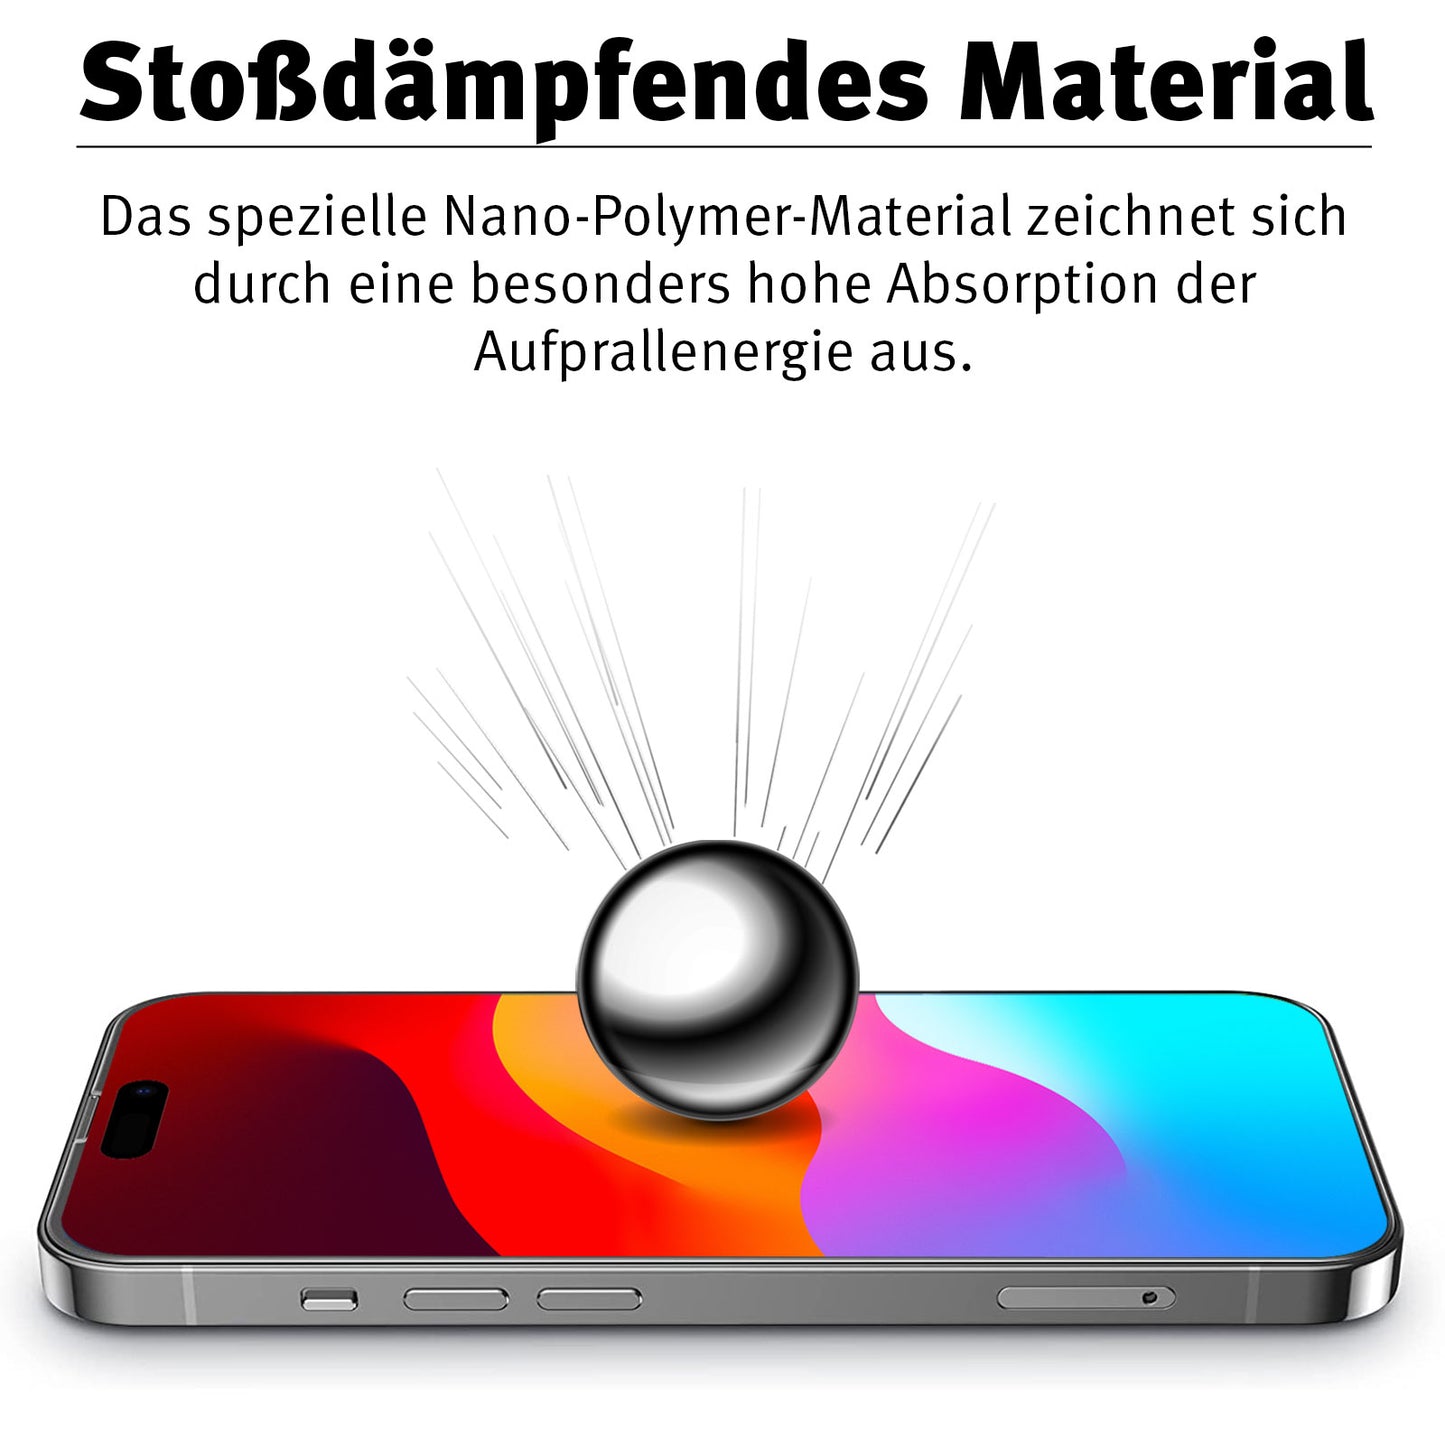 Beastprotect iPhone 15 Schutzfolie HYBRID 3D